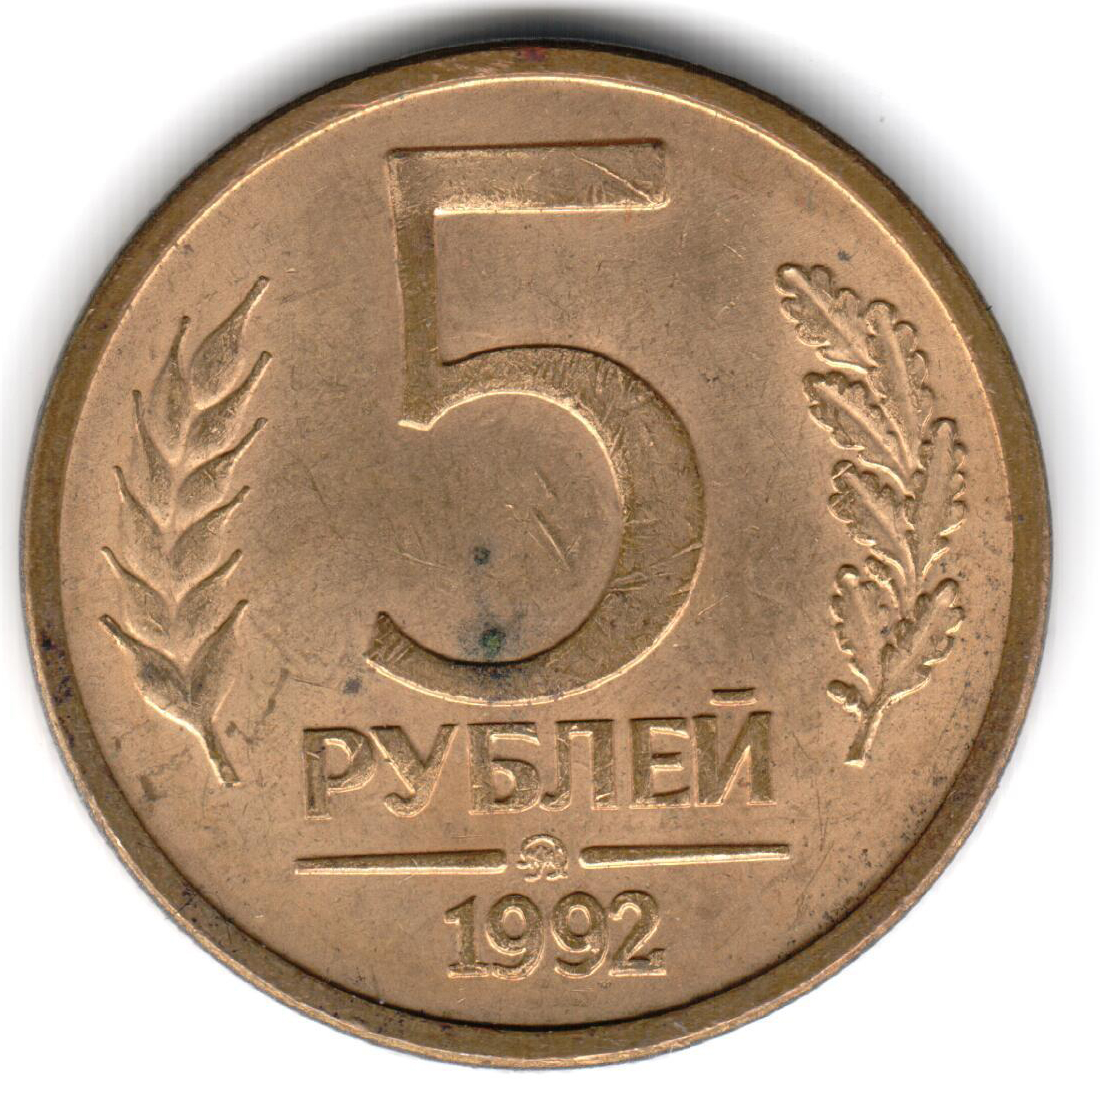 5 рублей дорог. 5 Рублей 1992 года. Монета 5 рублей 1992. Монеты СССР 1992. 5 Руб 1992 года.